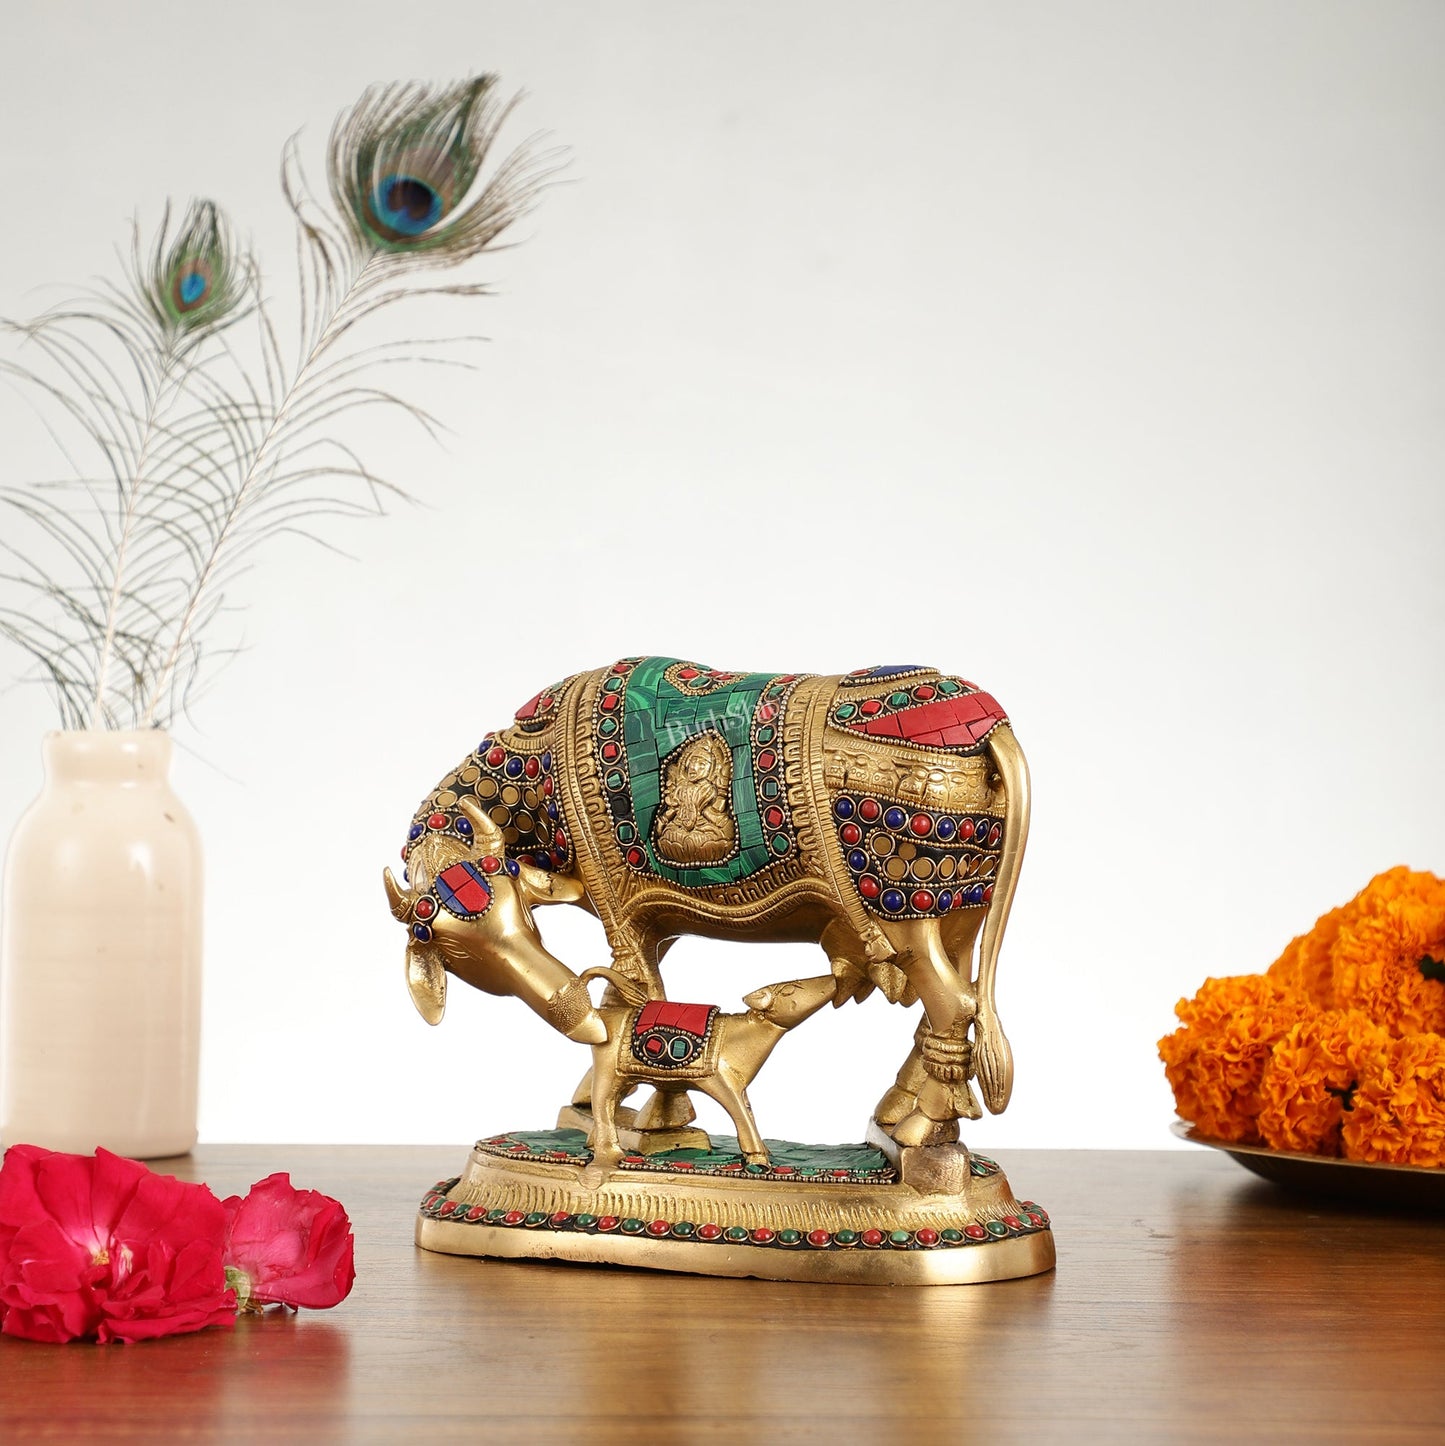 Kaamdhenu Brass Idol with Ganesha and Lakshmi Engravings | 6.5" x 8" x 5 - Budhshiv.com